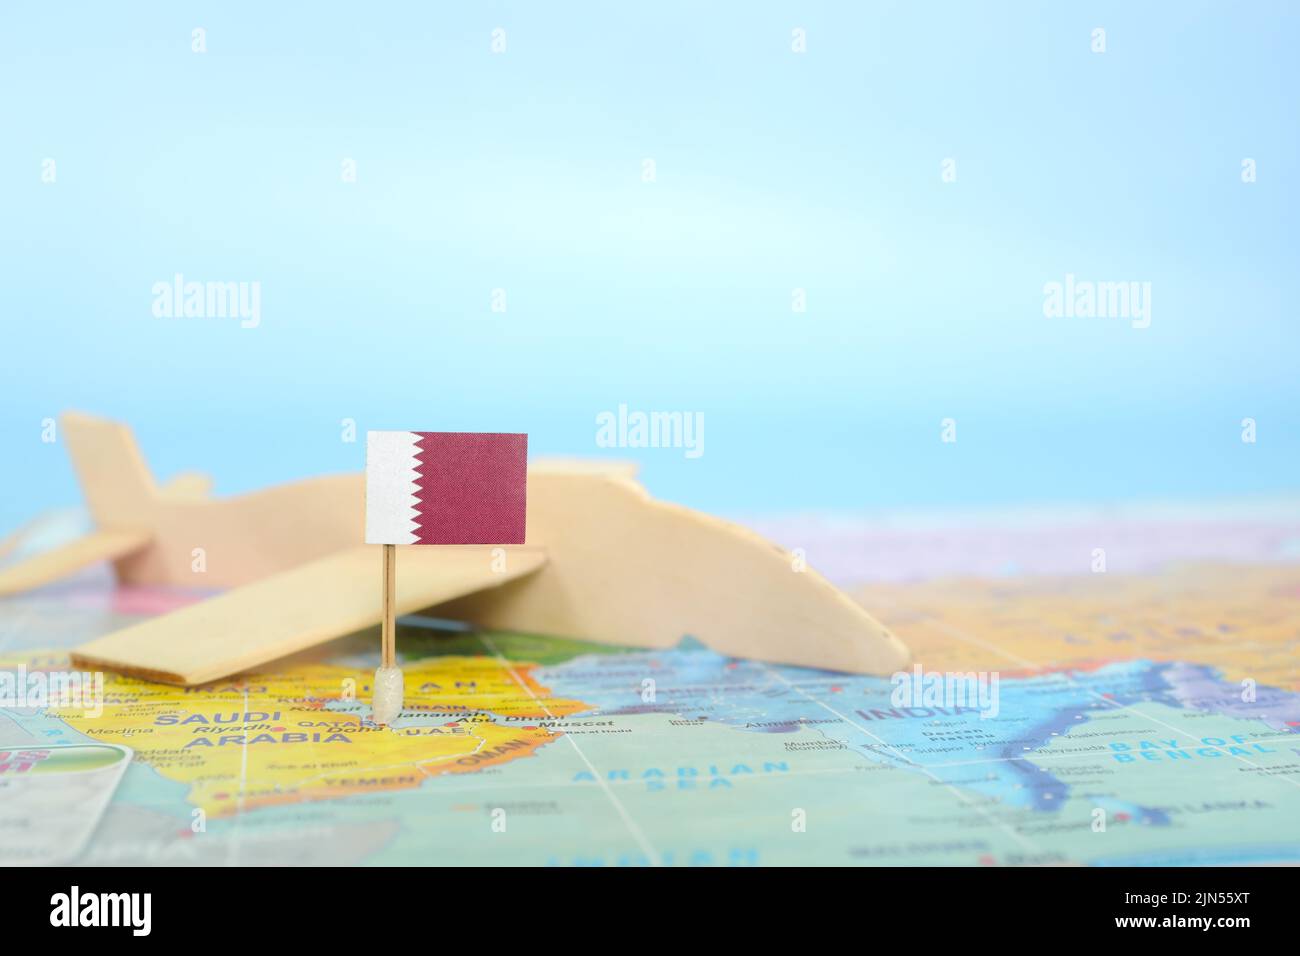 Fuoco selettivo della bandiera del Qatar in mappa del mondo sfocata e modello di aeroplano in legno. Qatar come concetto di viaggio e destinazione turistica. Foto Stock